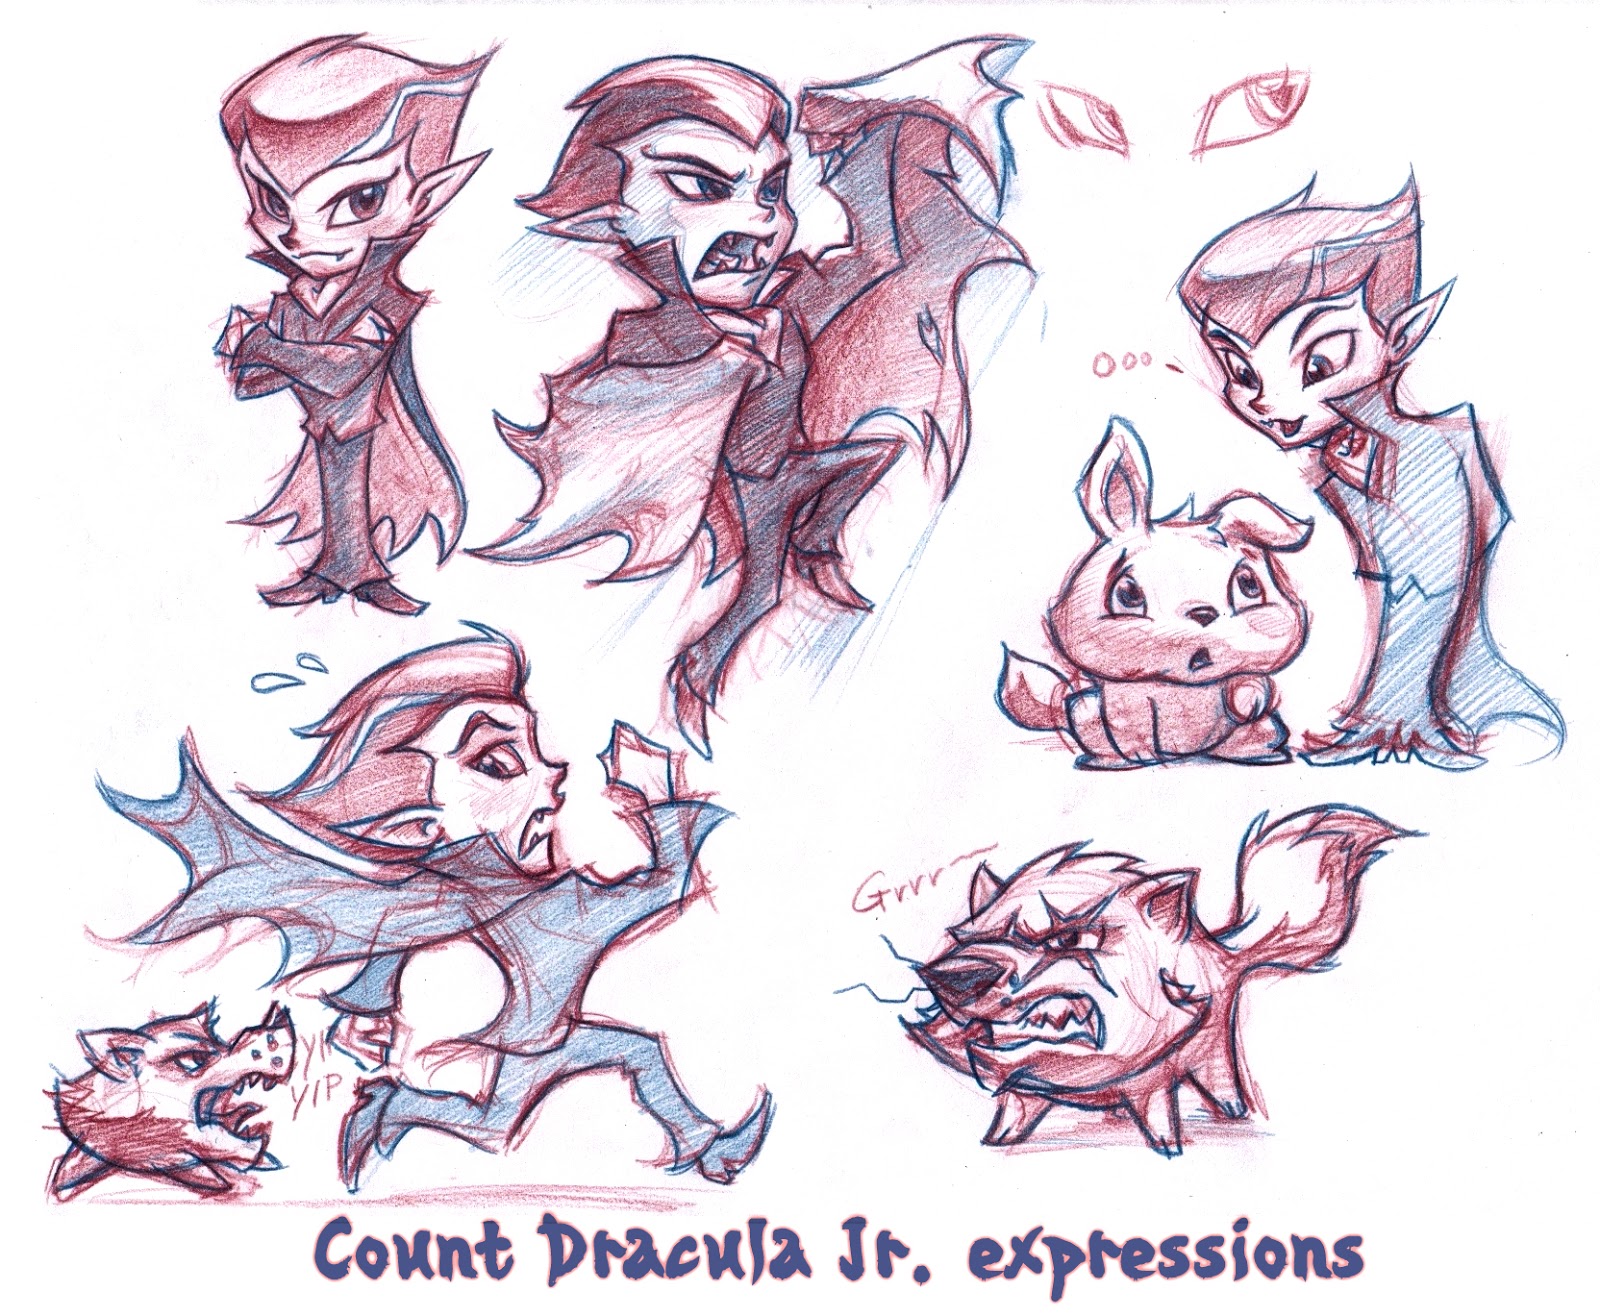 Count Dracula Jr. Count+Dracula+Jr_expressions